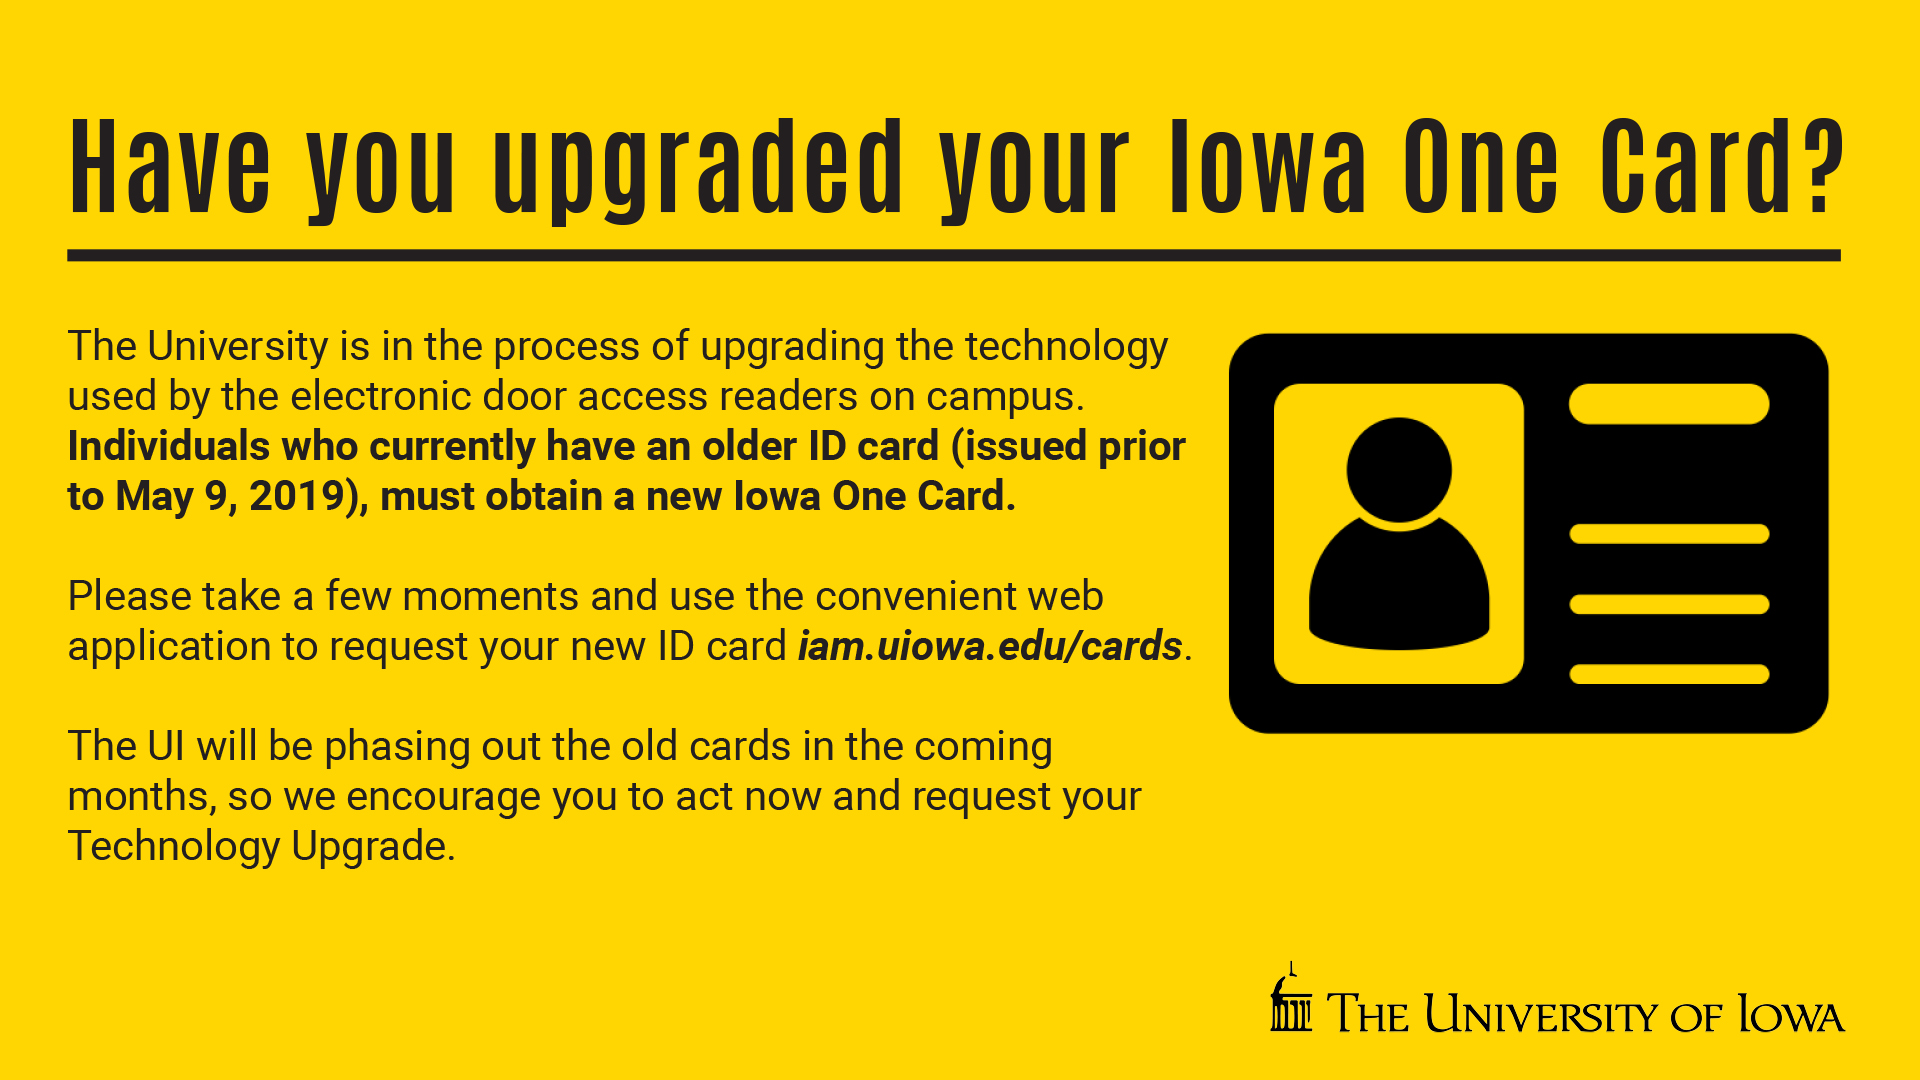 Iowa One Card